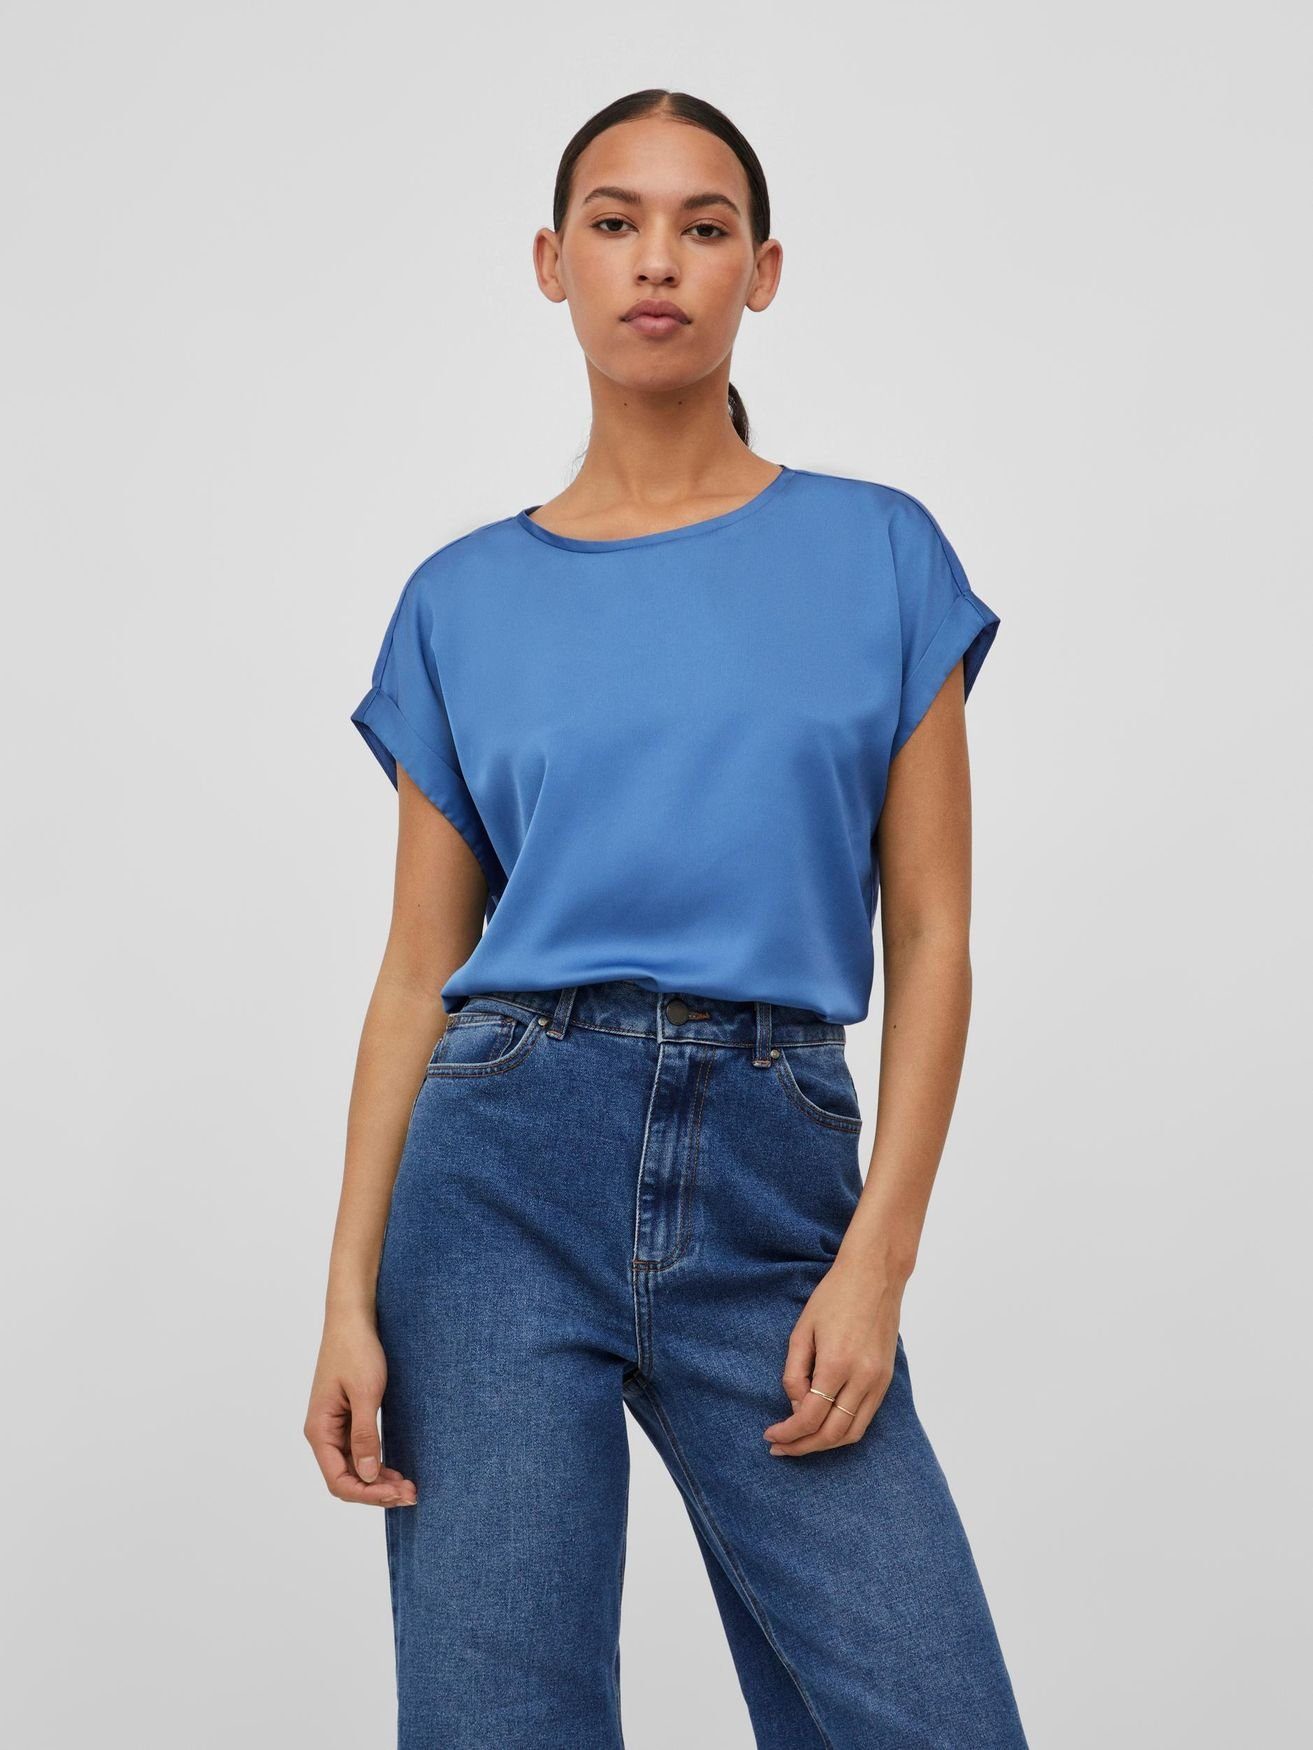 VIELLETTE Kurzarm in Vila Satain T-Shirt Blau 4599 Glänzend Basic Top Blusen T-Shirt